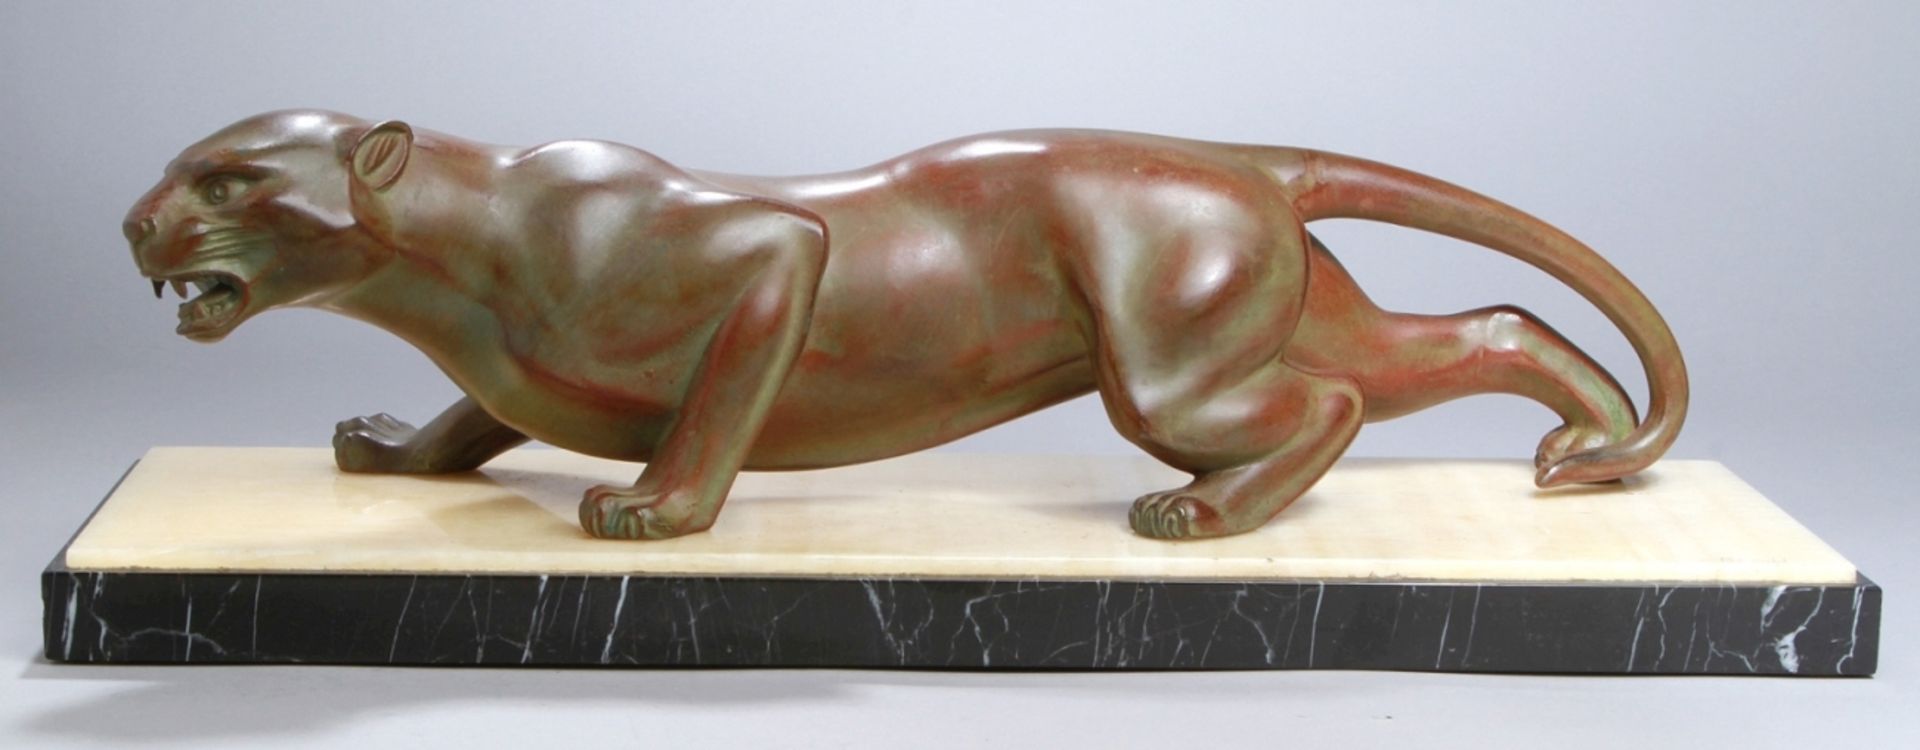 Weißbronze-Tierplastik, "Panther", Brault, J., Bildhauer 1. Hälfte 20. Jh.,vollplastische, natu